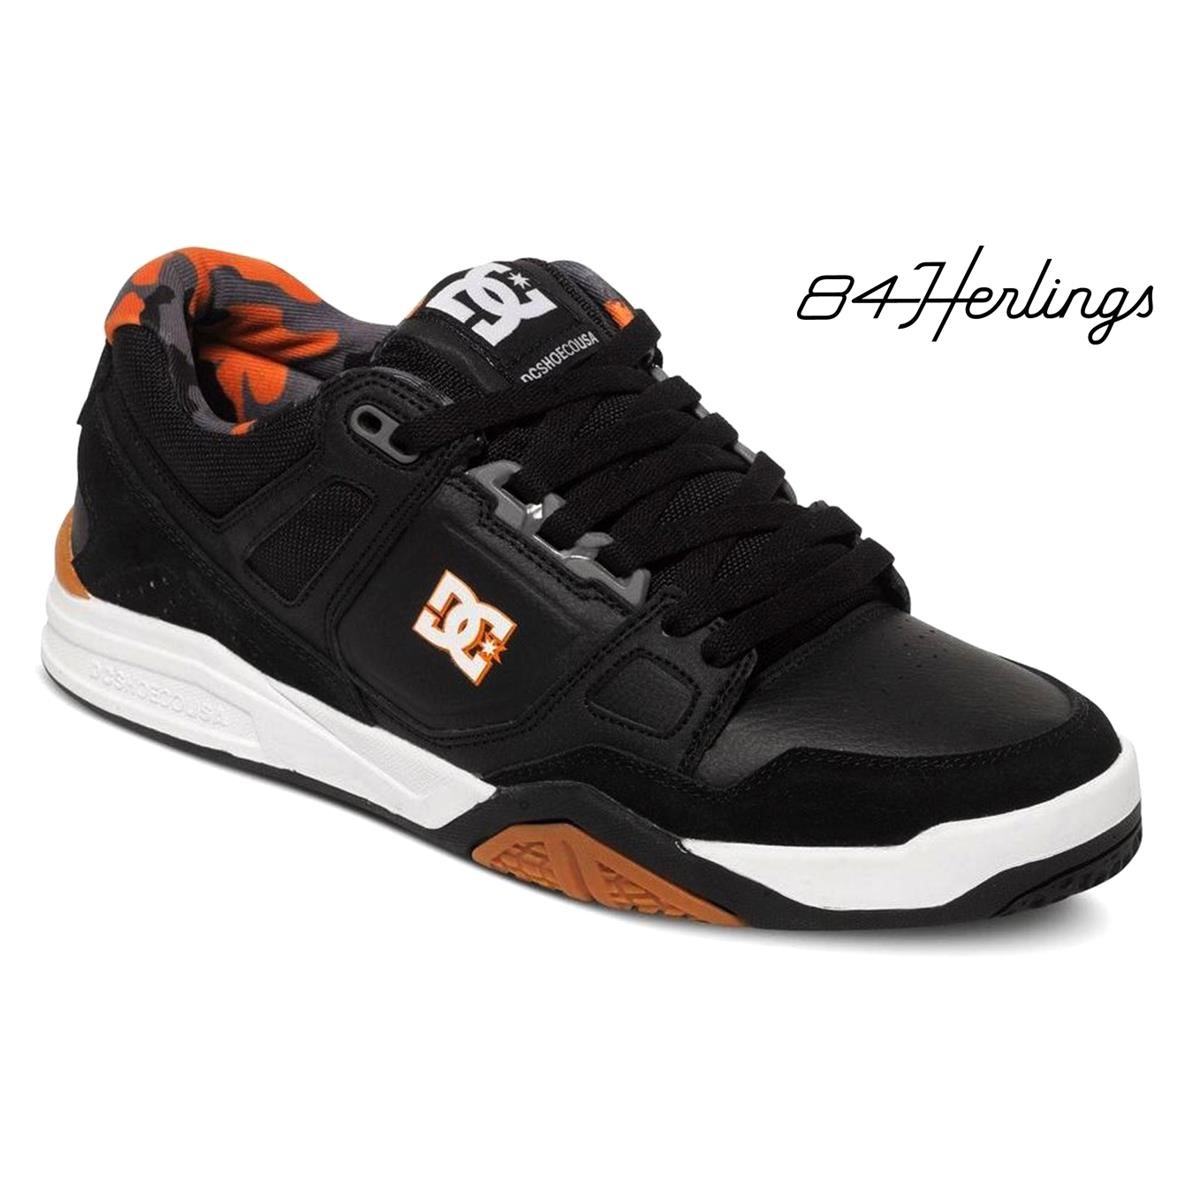 DC Chaussures Stag 2 JH Black/Black/Orange - Jeffrey Herlings